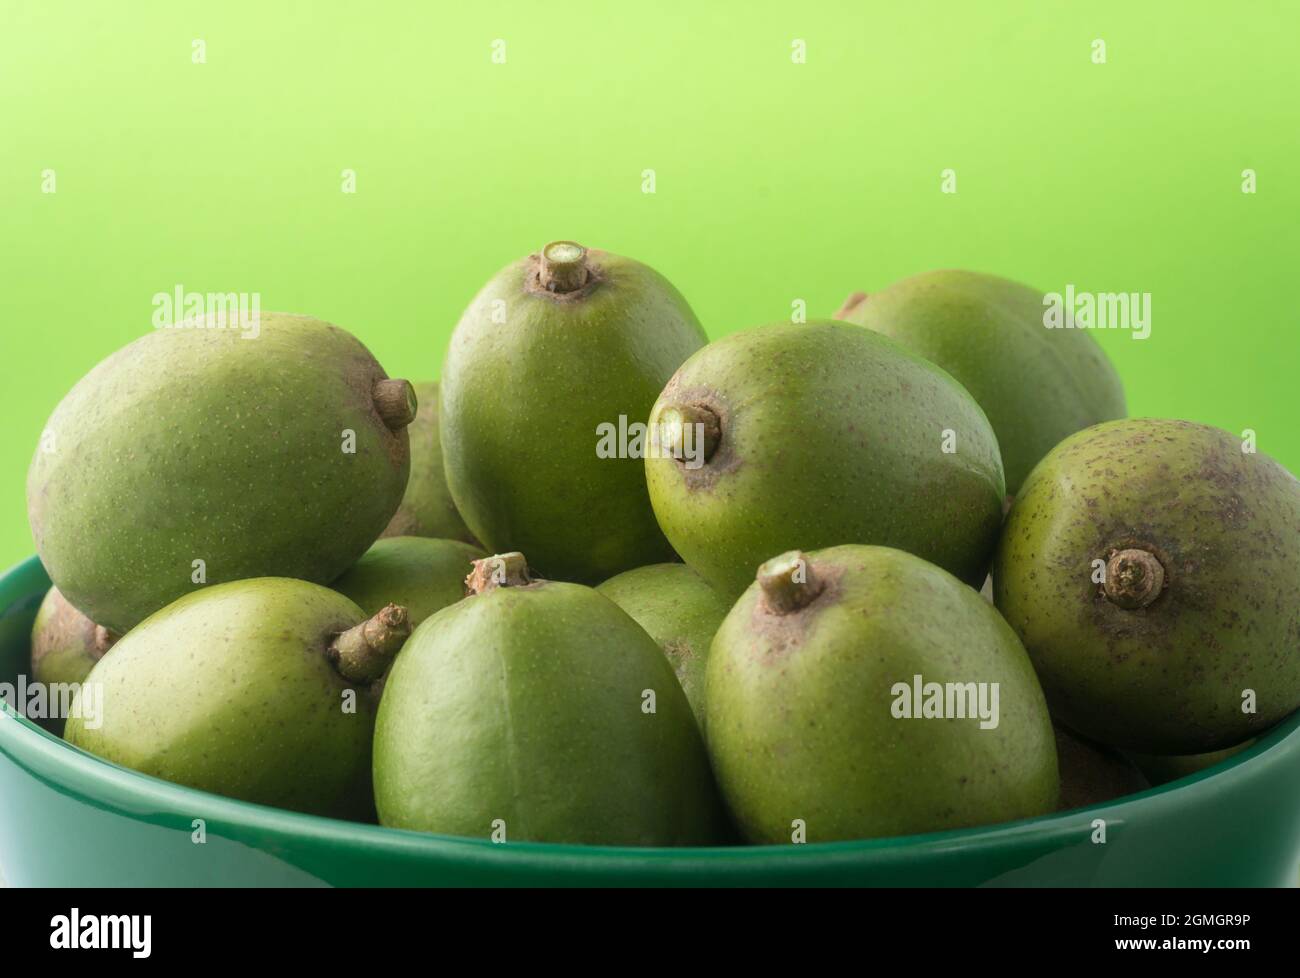 ambarella ou curry de prune de juin, fruits comestibles dans un bol, vue rapprochée prise sur un fond vert clair Banque D'Images